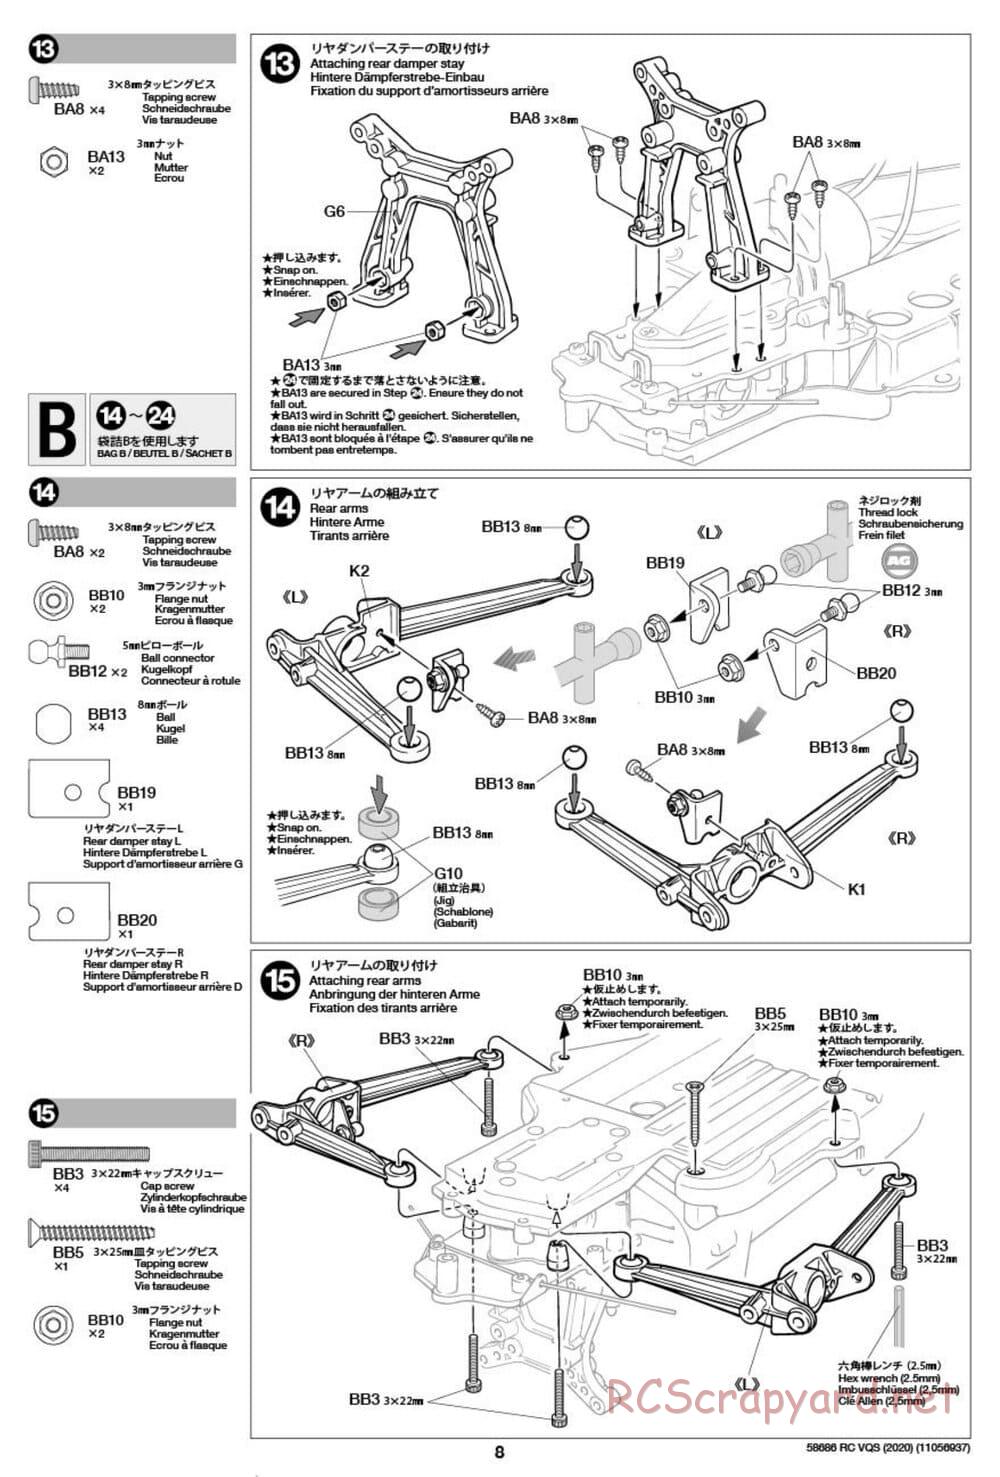 Tamiya - VQS (2020) - AV Chassis - Manual - Page 8